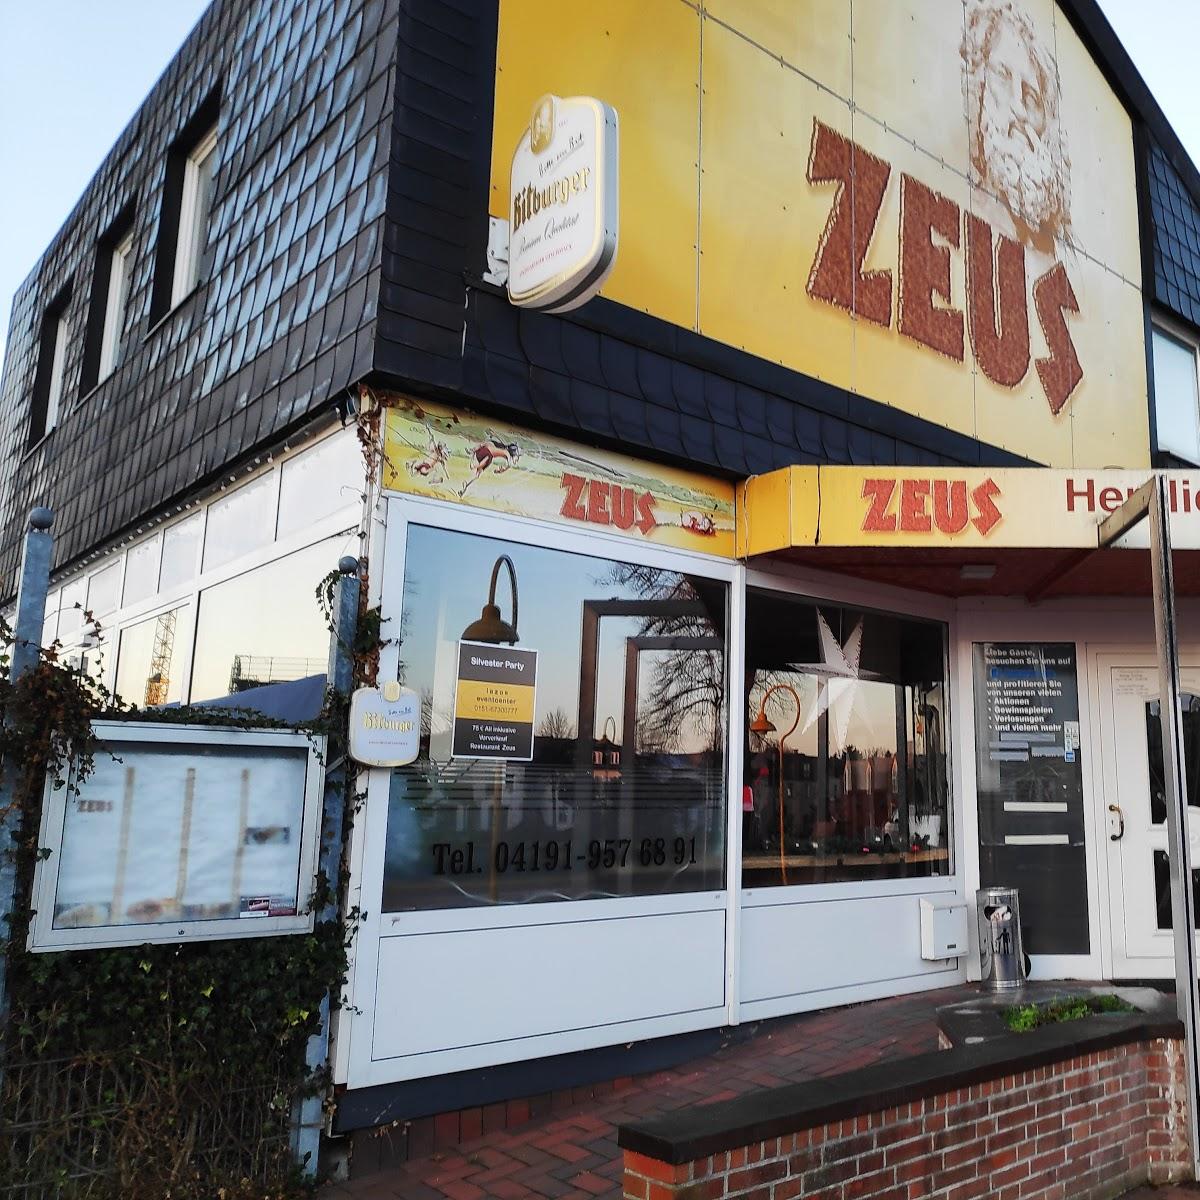 Restaurant "Restaurant Zeus" in  Kaltenkirchen